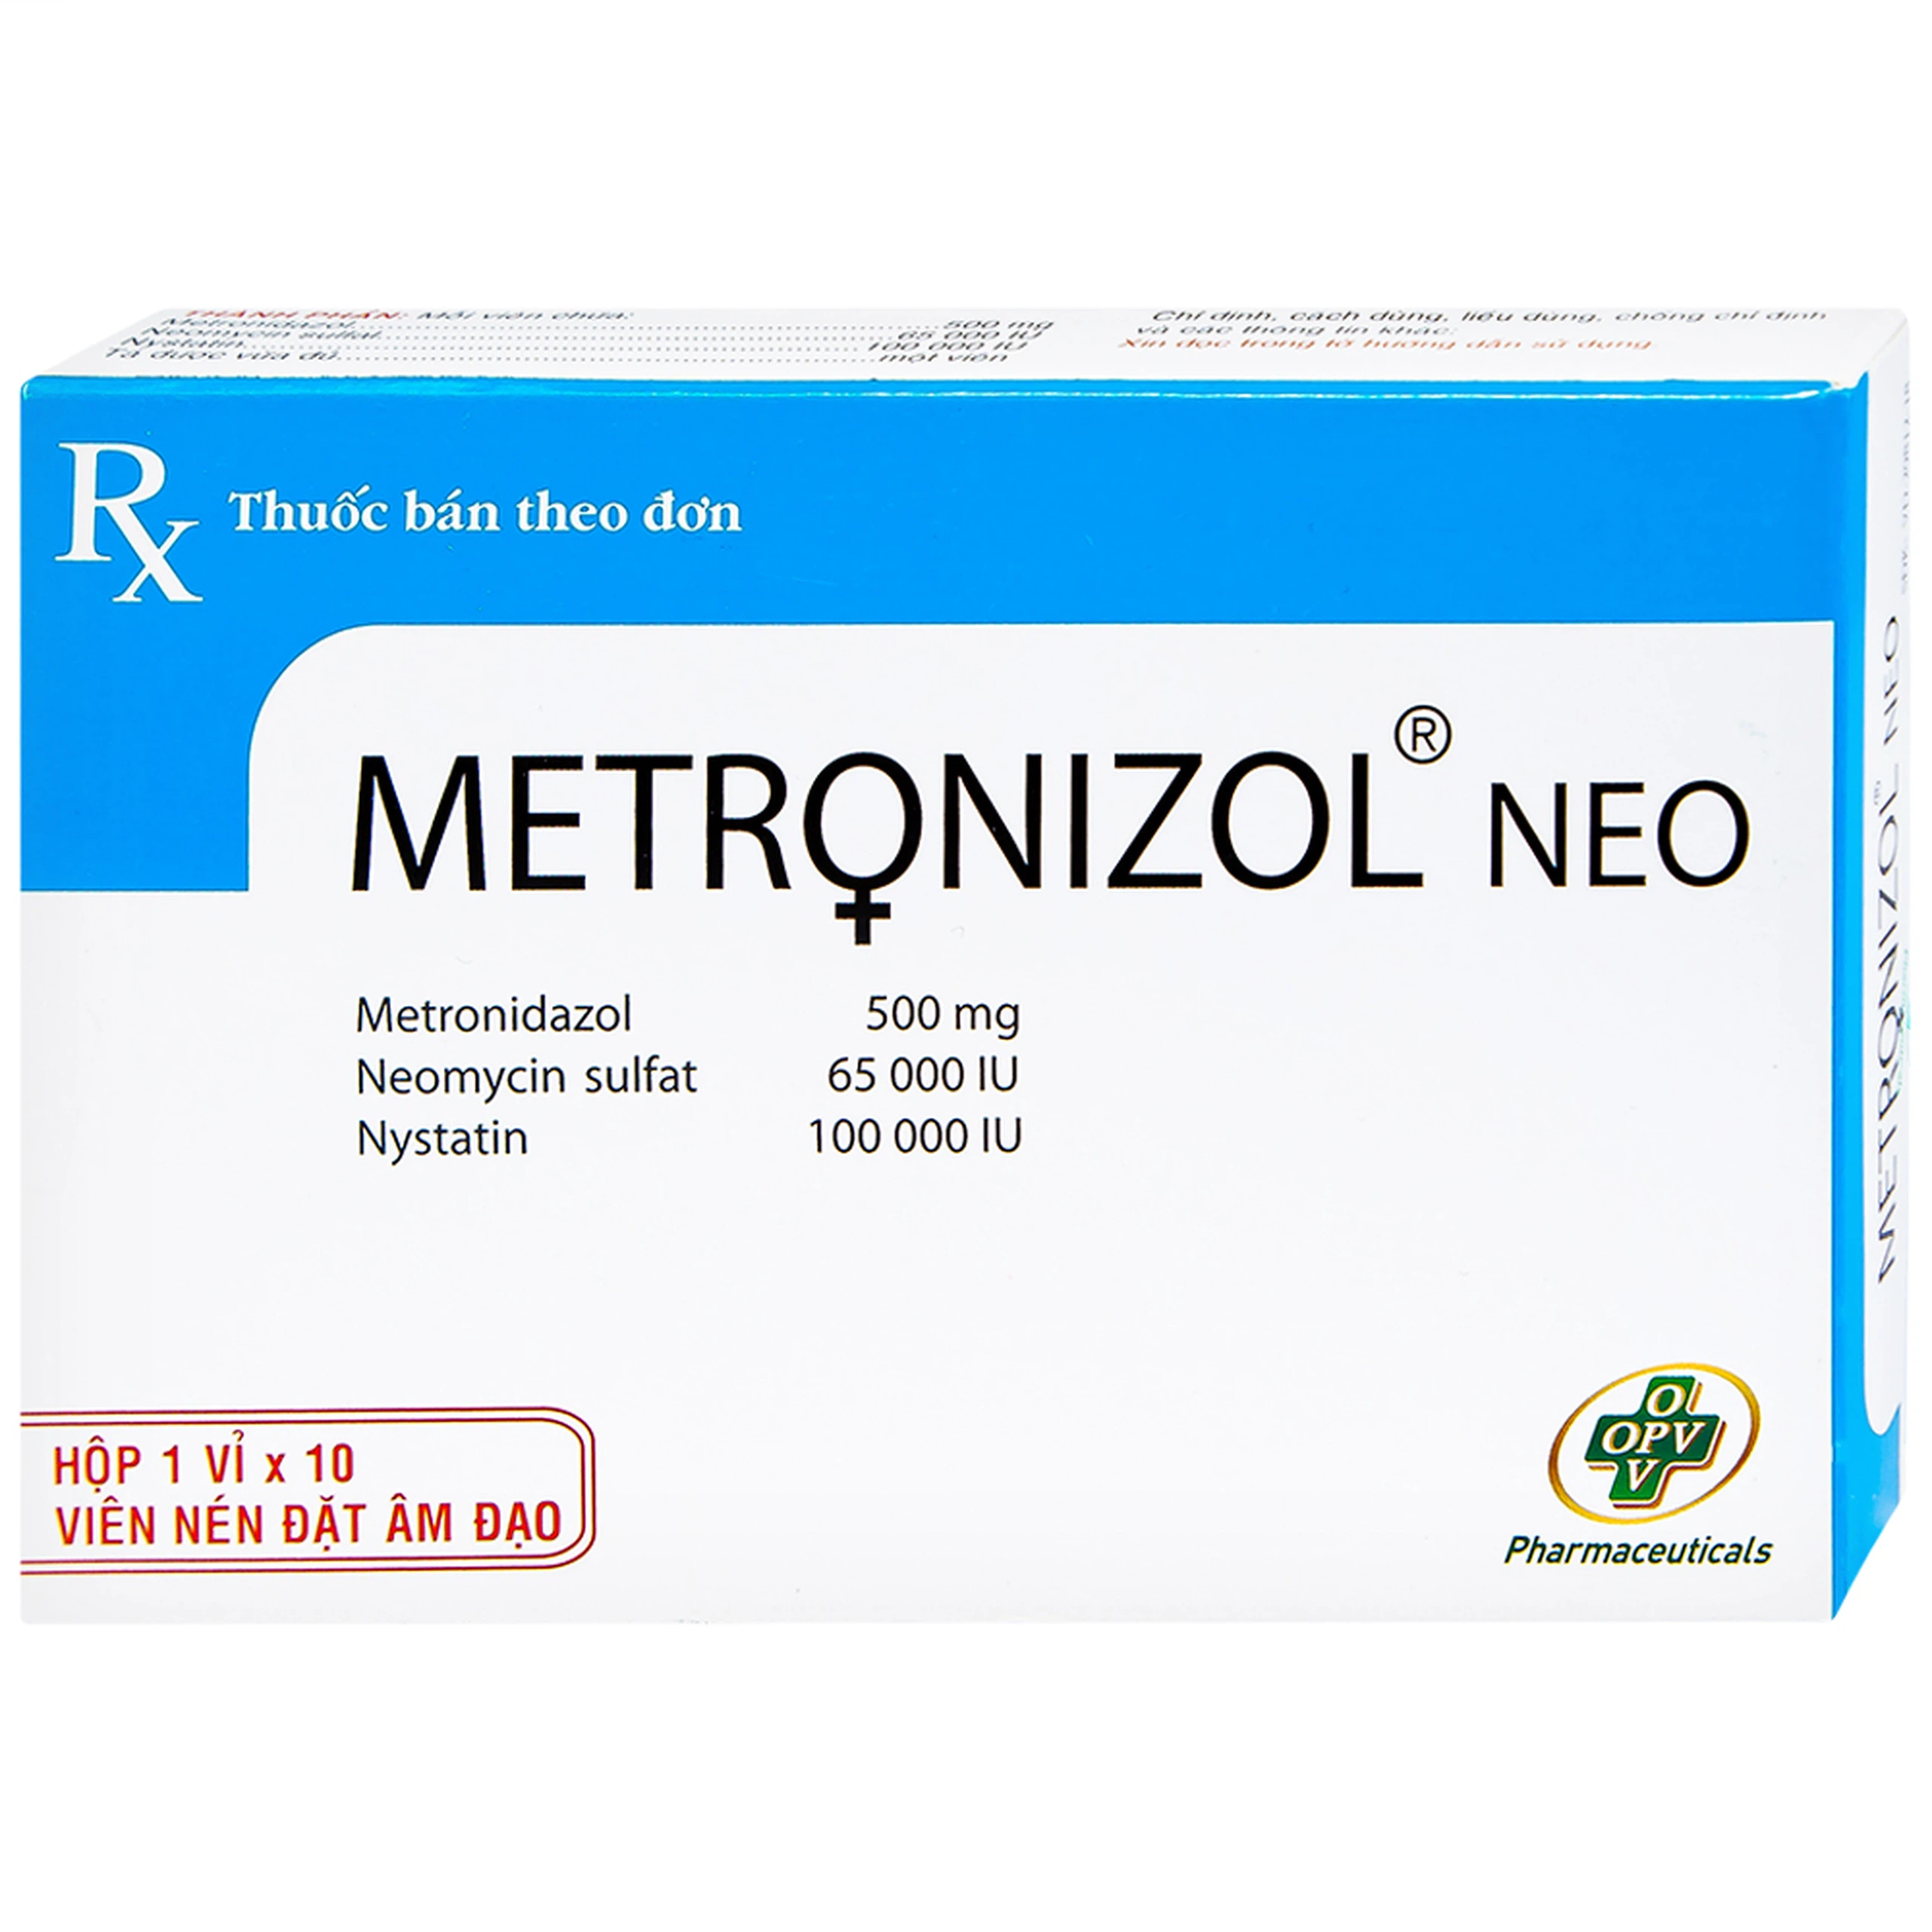 Viên đặt âm đạo Metronizol Neo OPV điều trị viêm nhiễm âm đạo (1 vỉ x 10 viên)